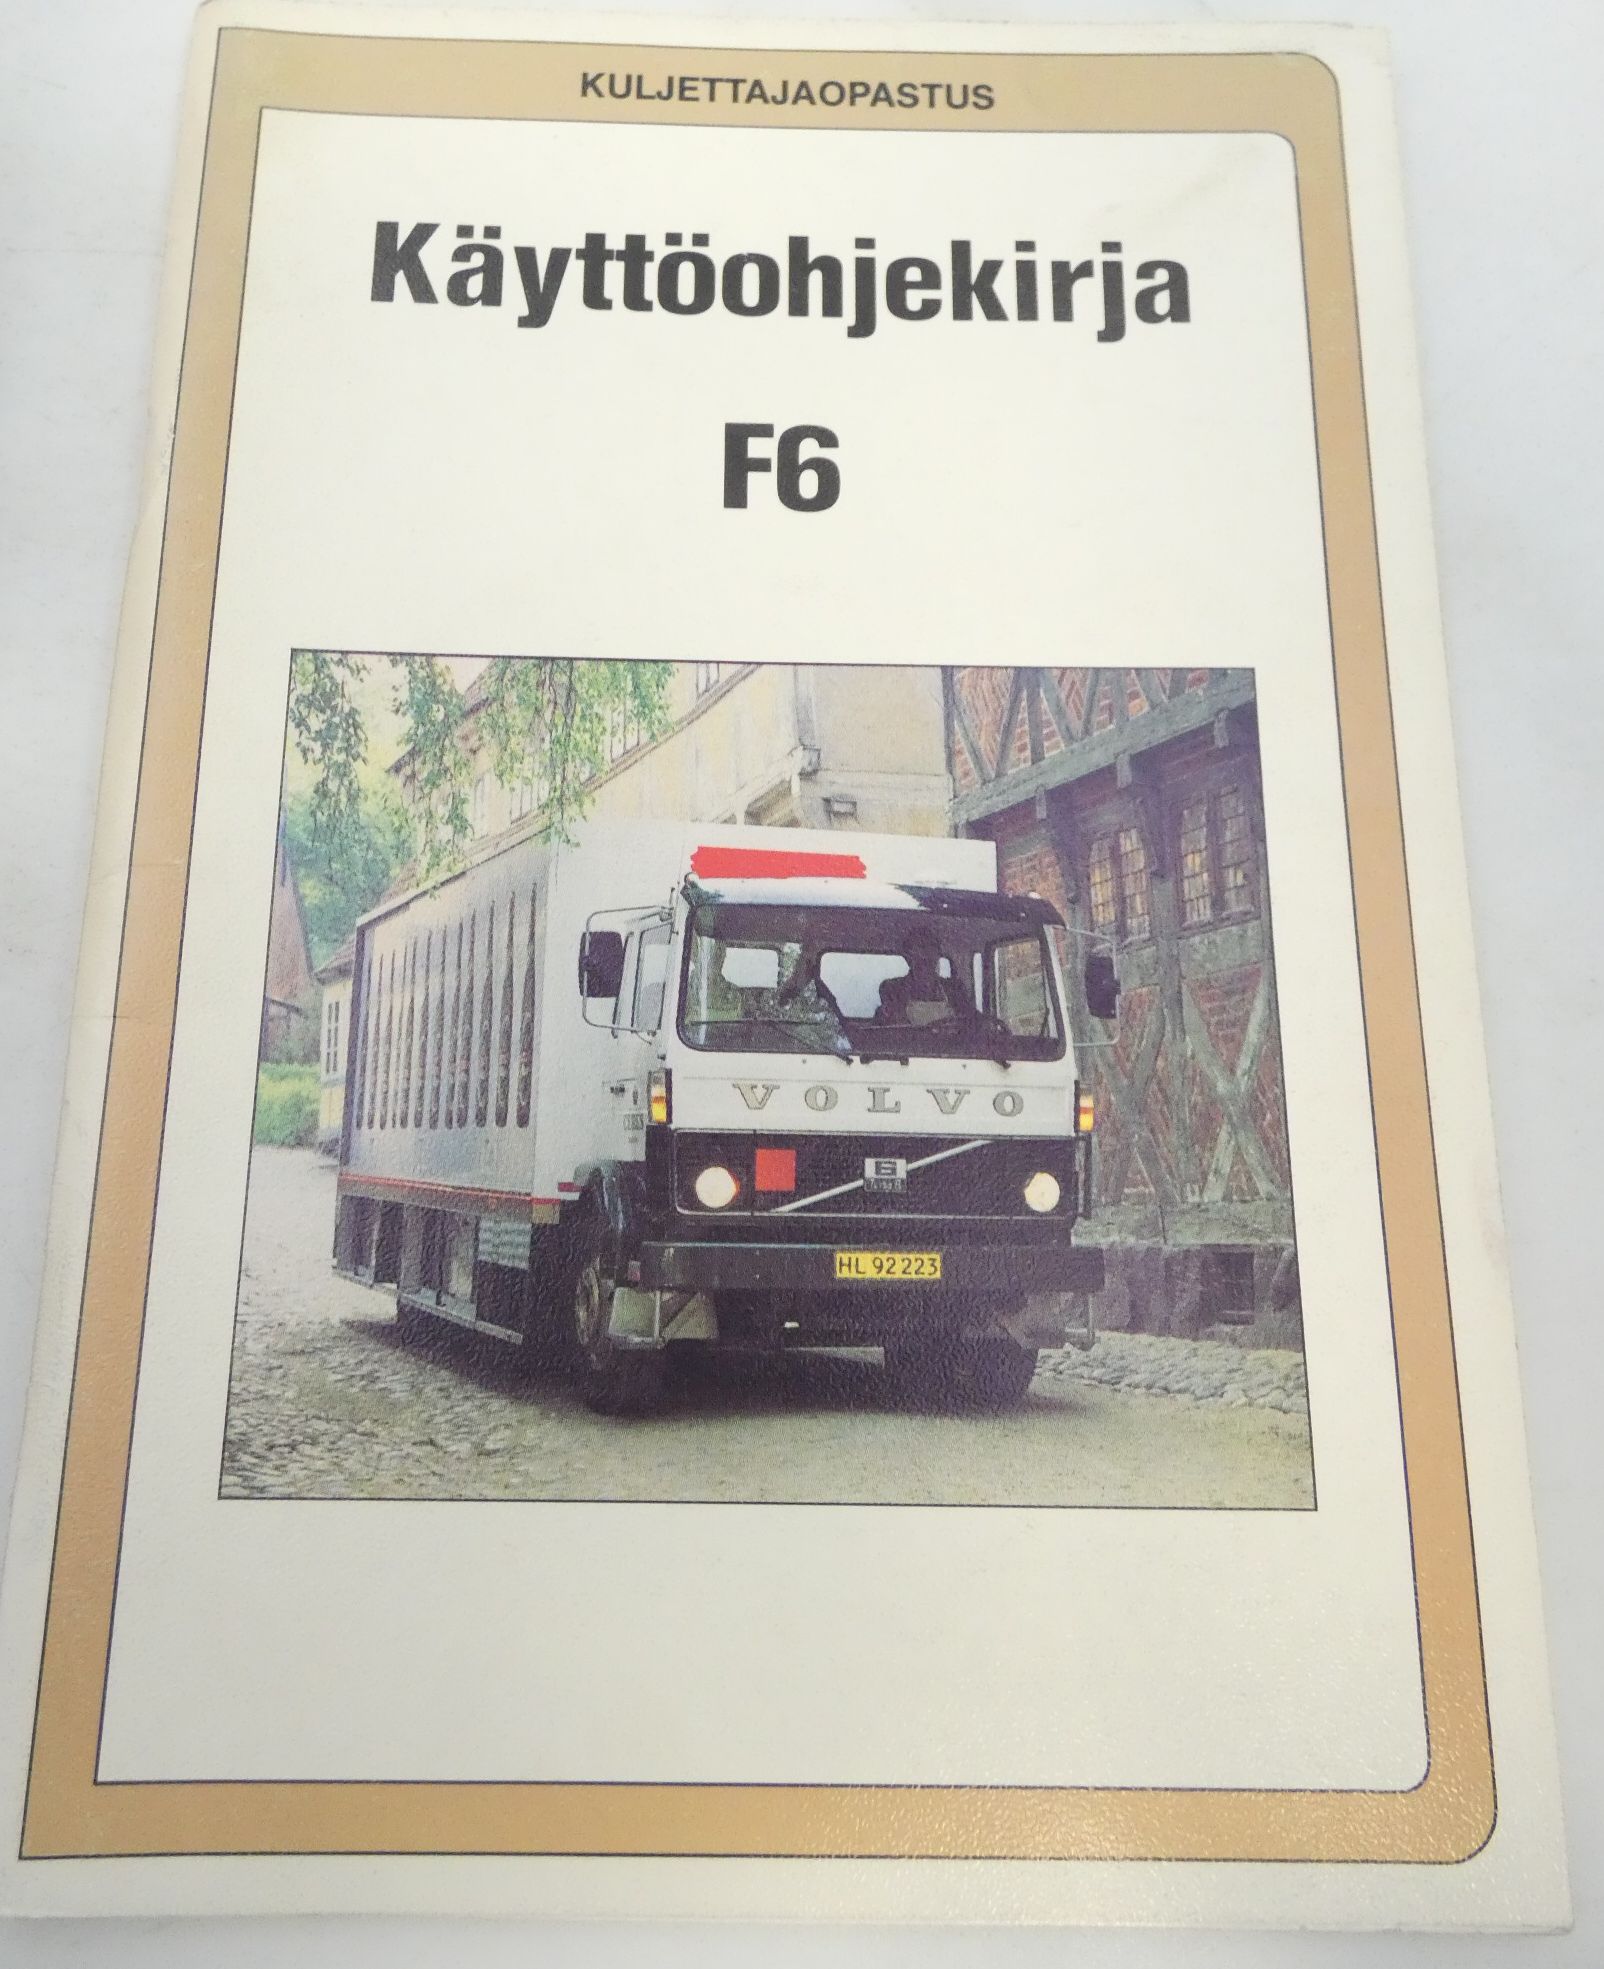 Volvo F6 käyttöohjekirja